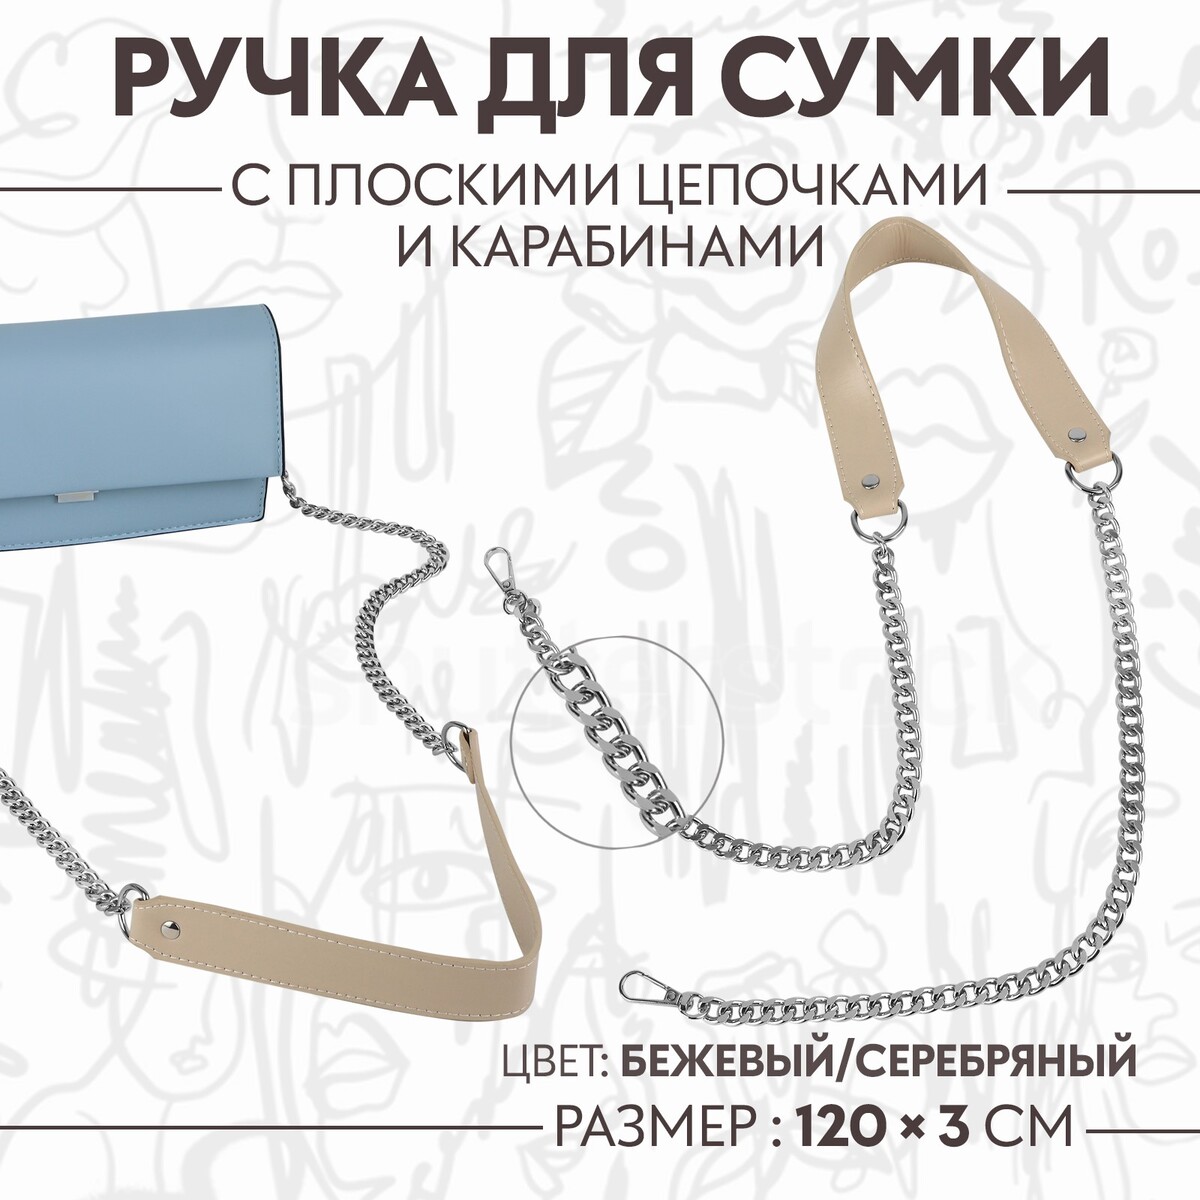 Ручка для сумки, с плоскими цепочками и карабинами, 120 × 3 см, цвет бежевый/серебряный ручка для сумки с карабинами 35 ± 1 см × 3 5 см серебряный